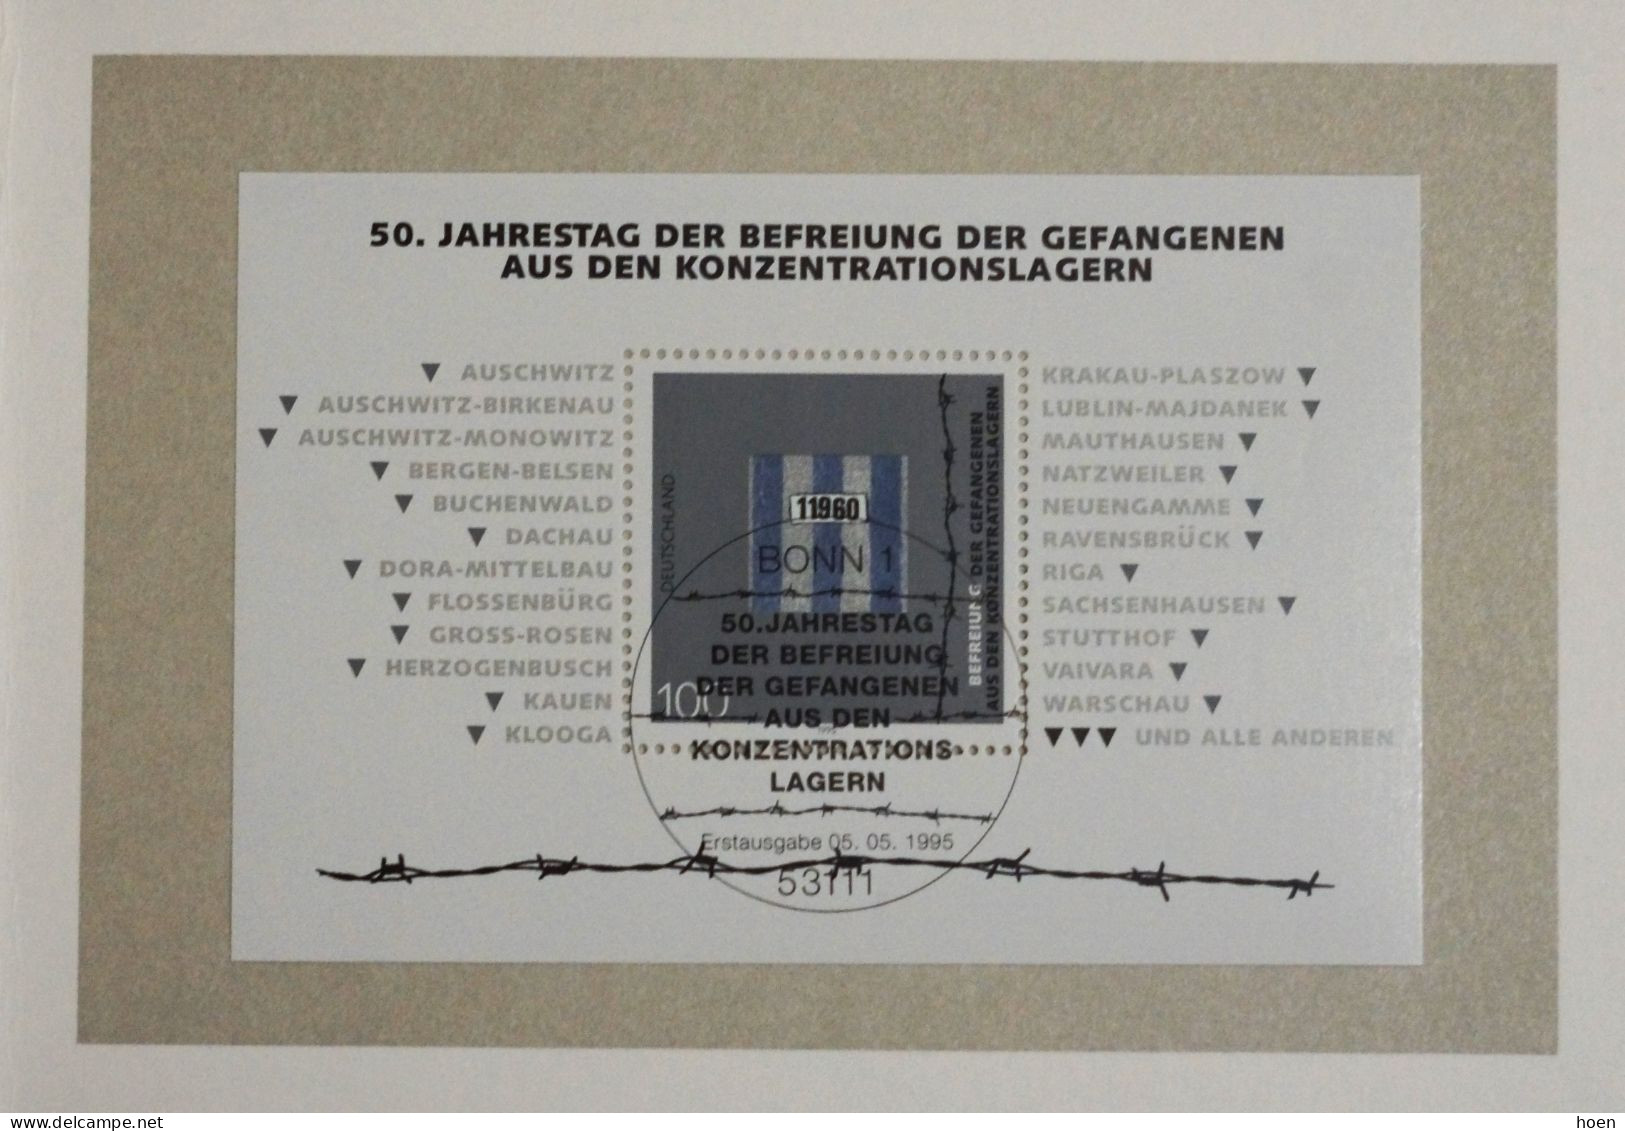 Allemagne - 40 cartes maximum avec oblitération premier jour - émanant du ministre des Postes et Télécommunications